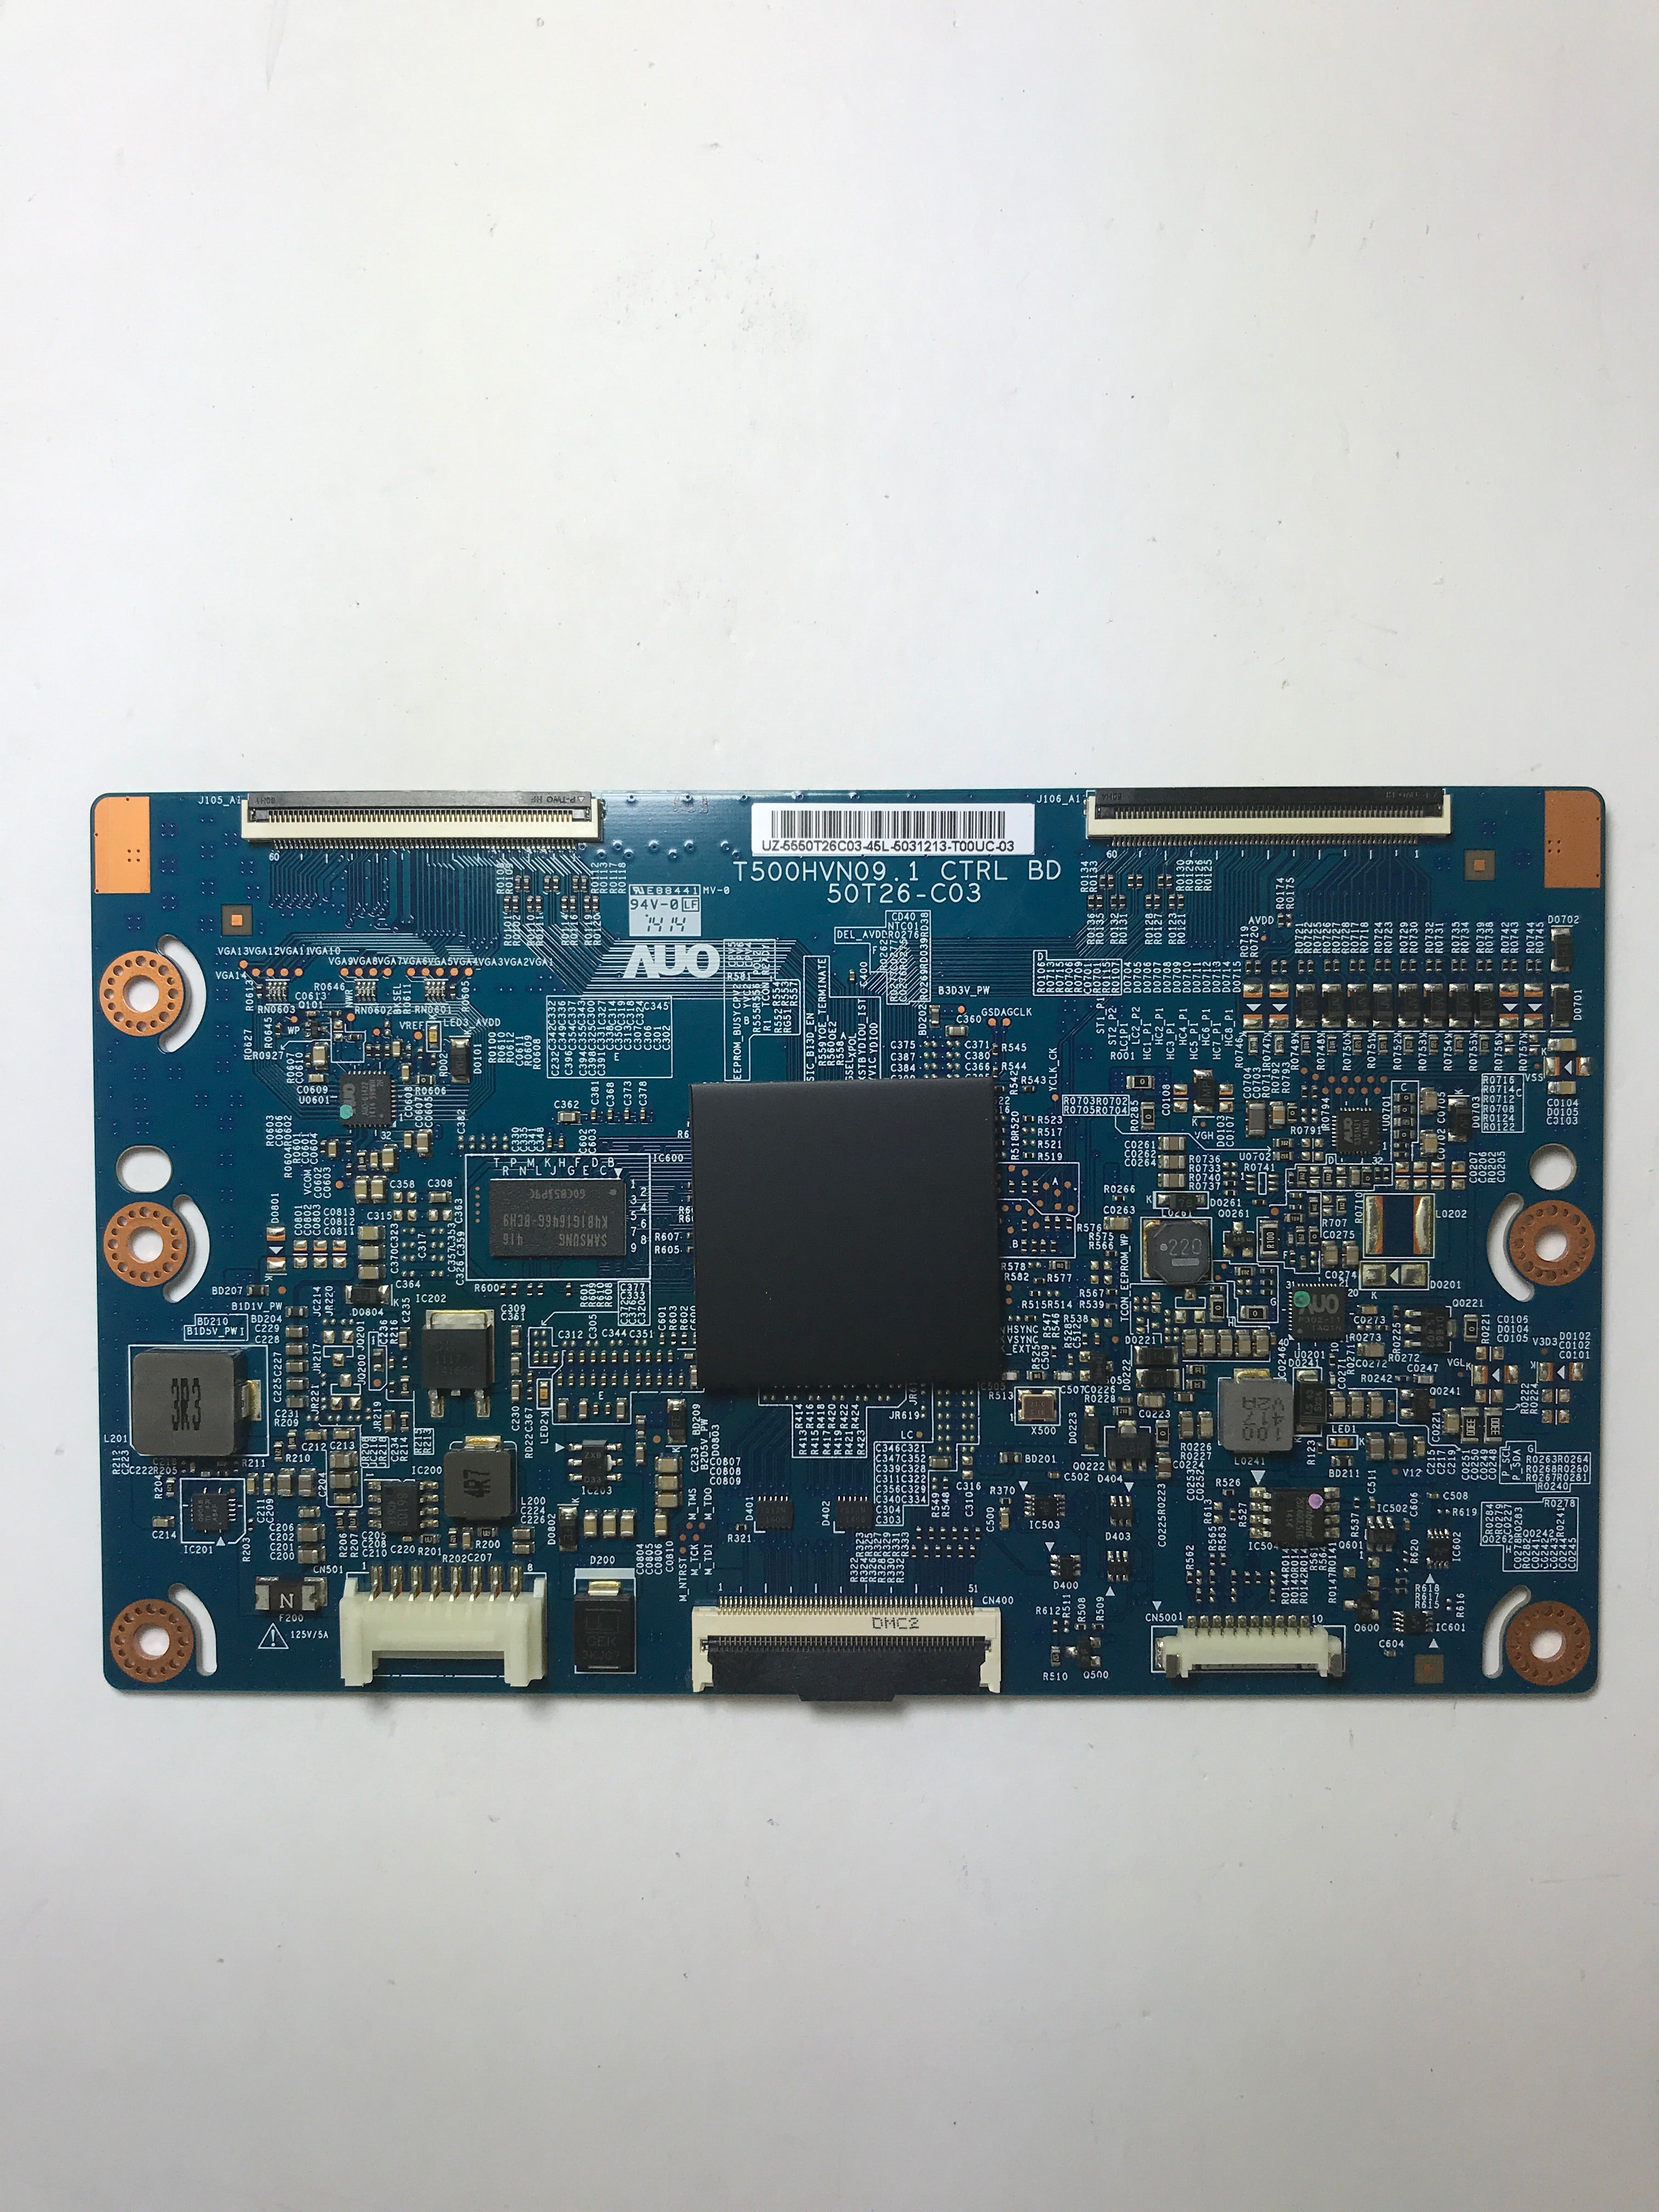 Samsung BN96-30391B (55.50T26.C03) T-Con Board